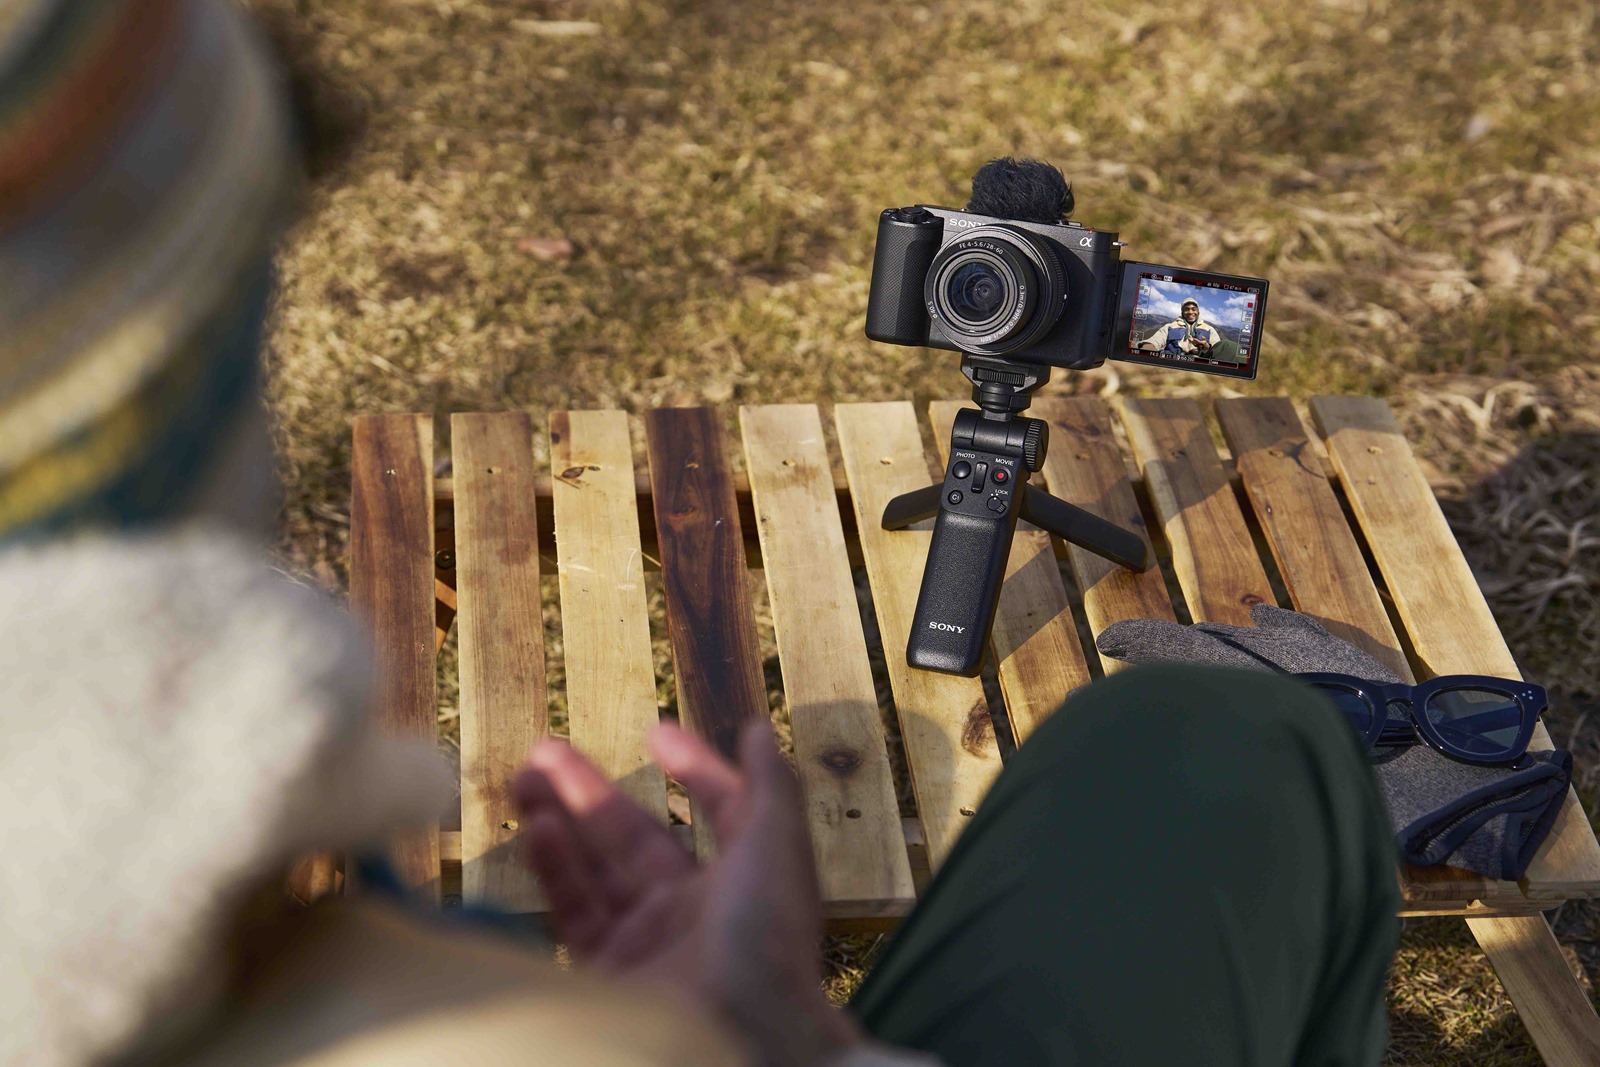 AI 加持 Sony 全片幅數位相機 ZV-E1 最智慧的 Vlogging 夥伴 @3C 達人廖阿輝